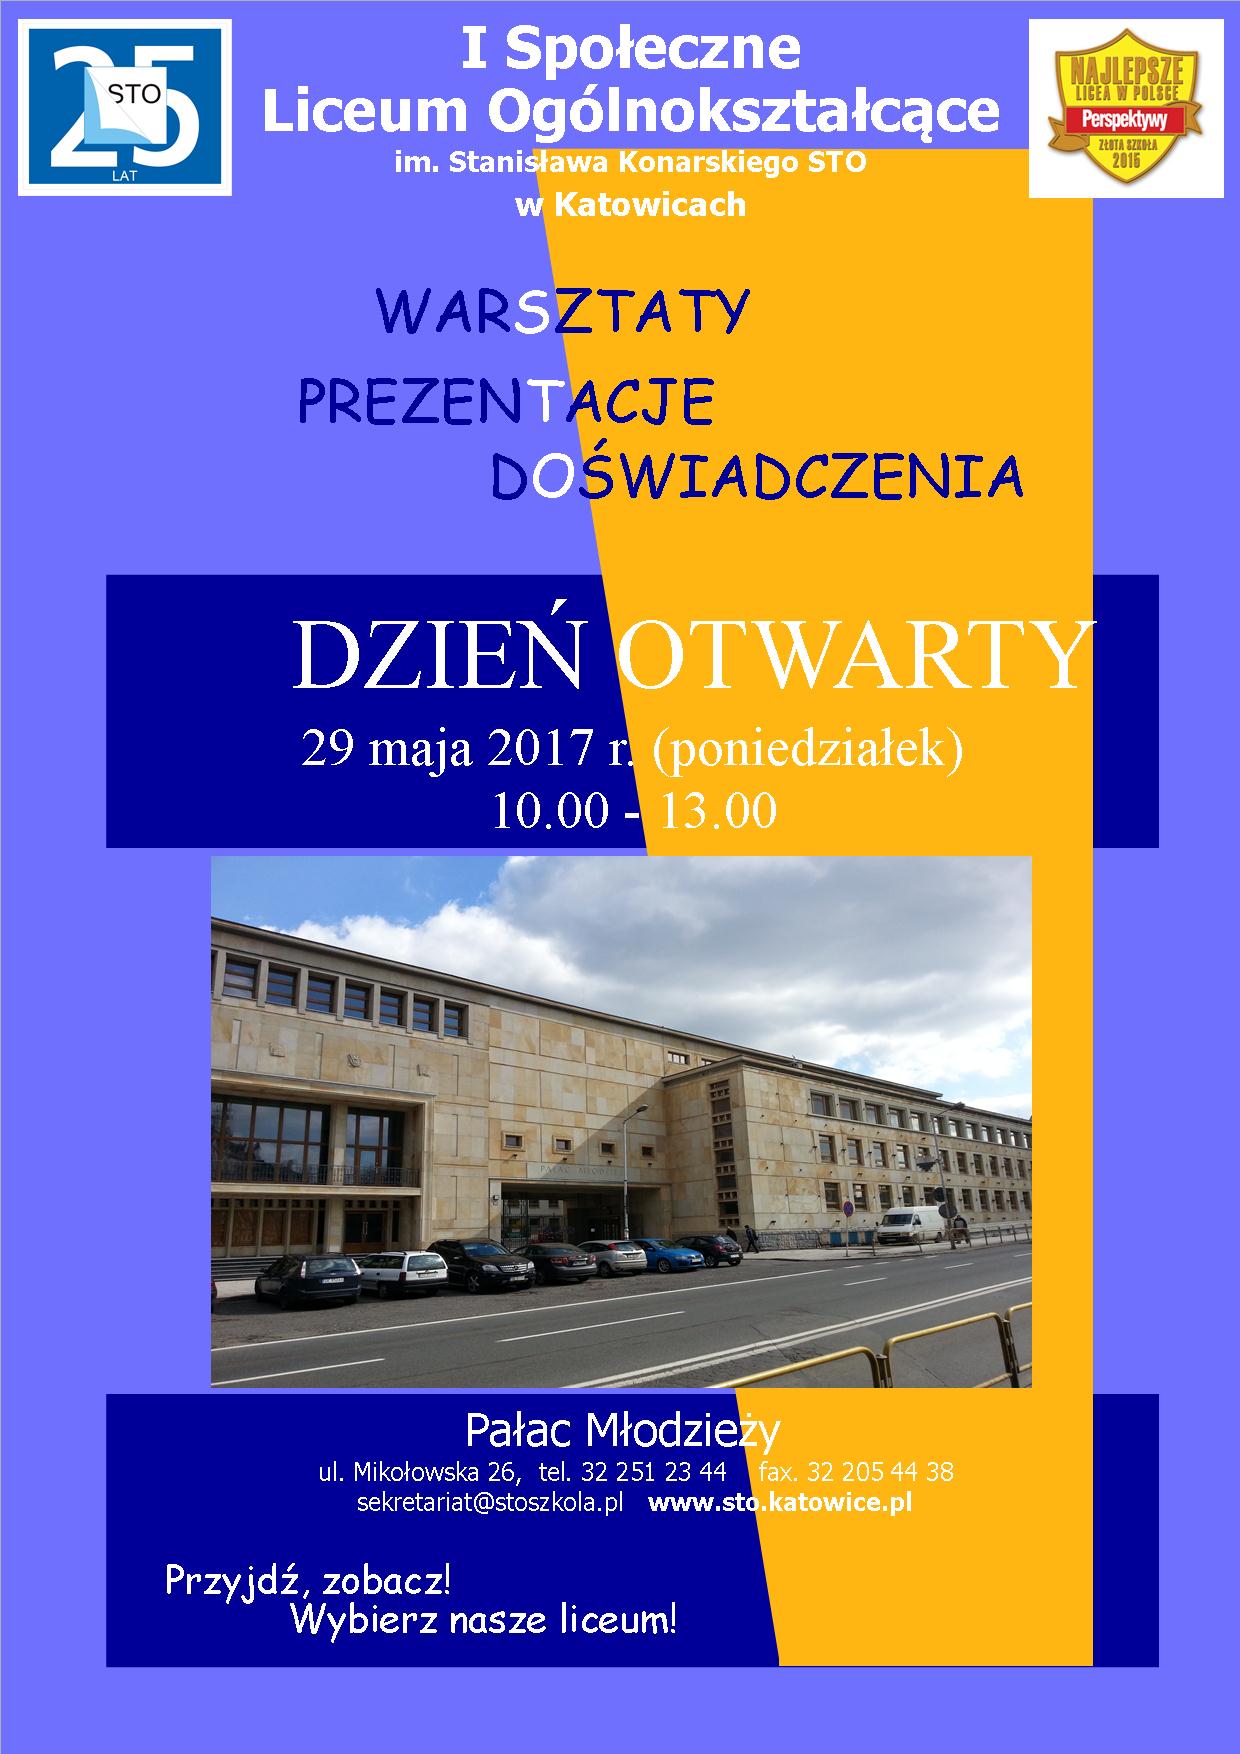 http://www.stoszkola.pl/wydarzenia/dniotwartelo.jpg